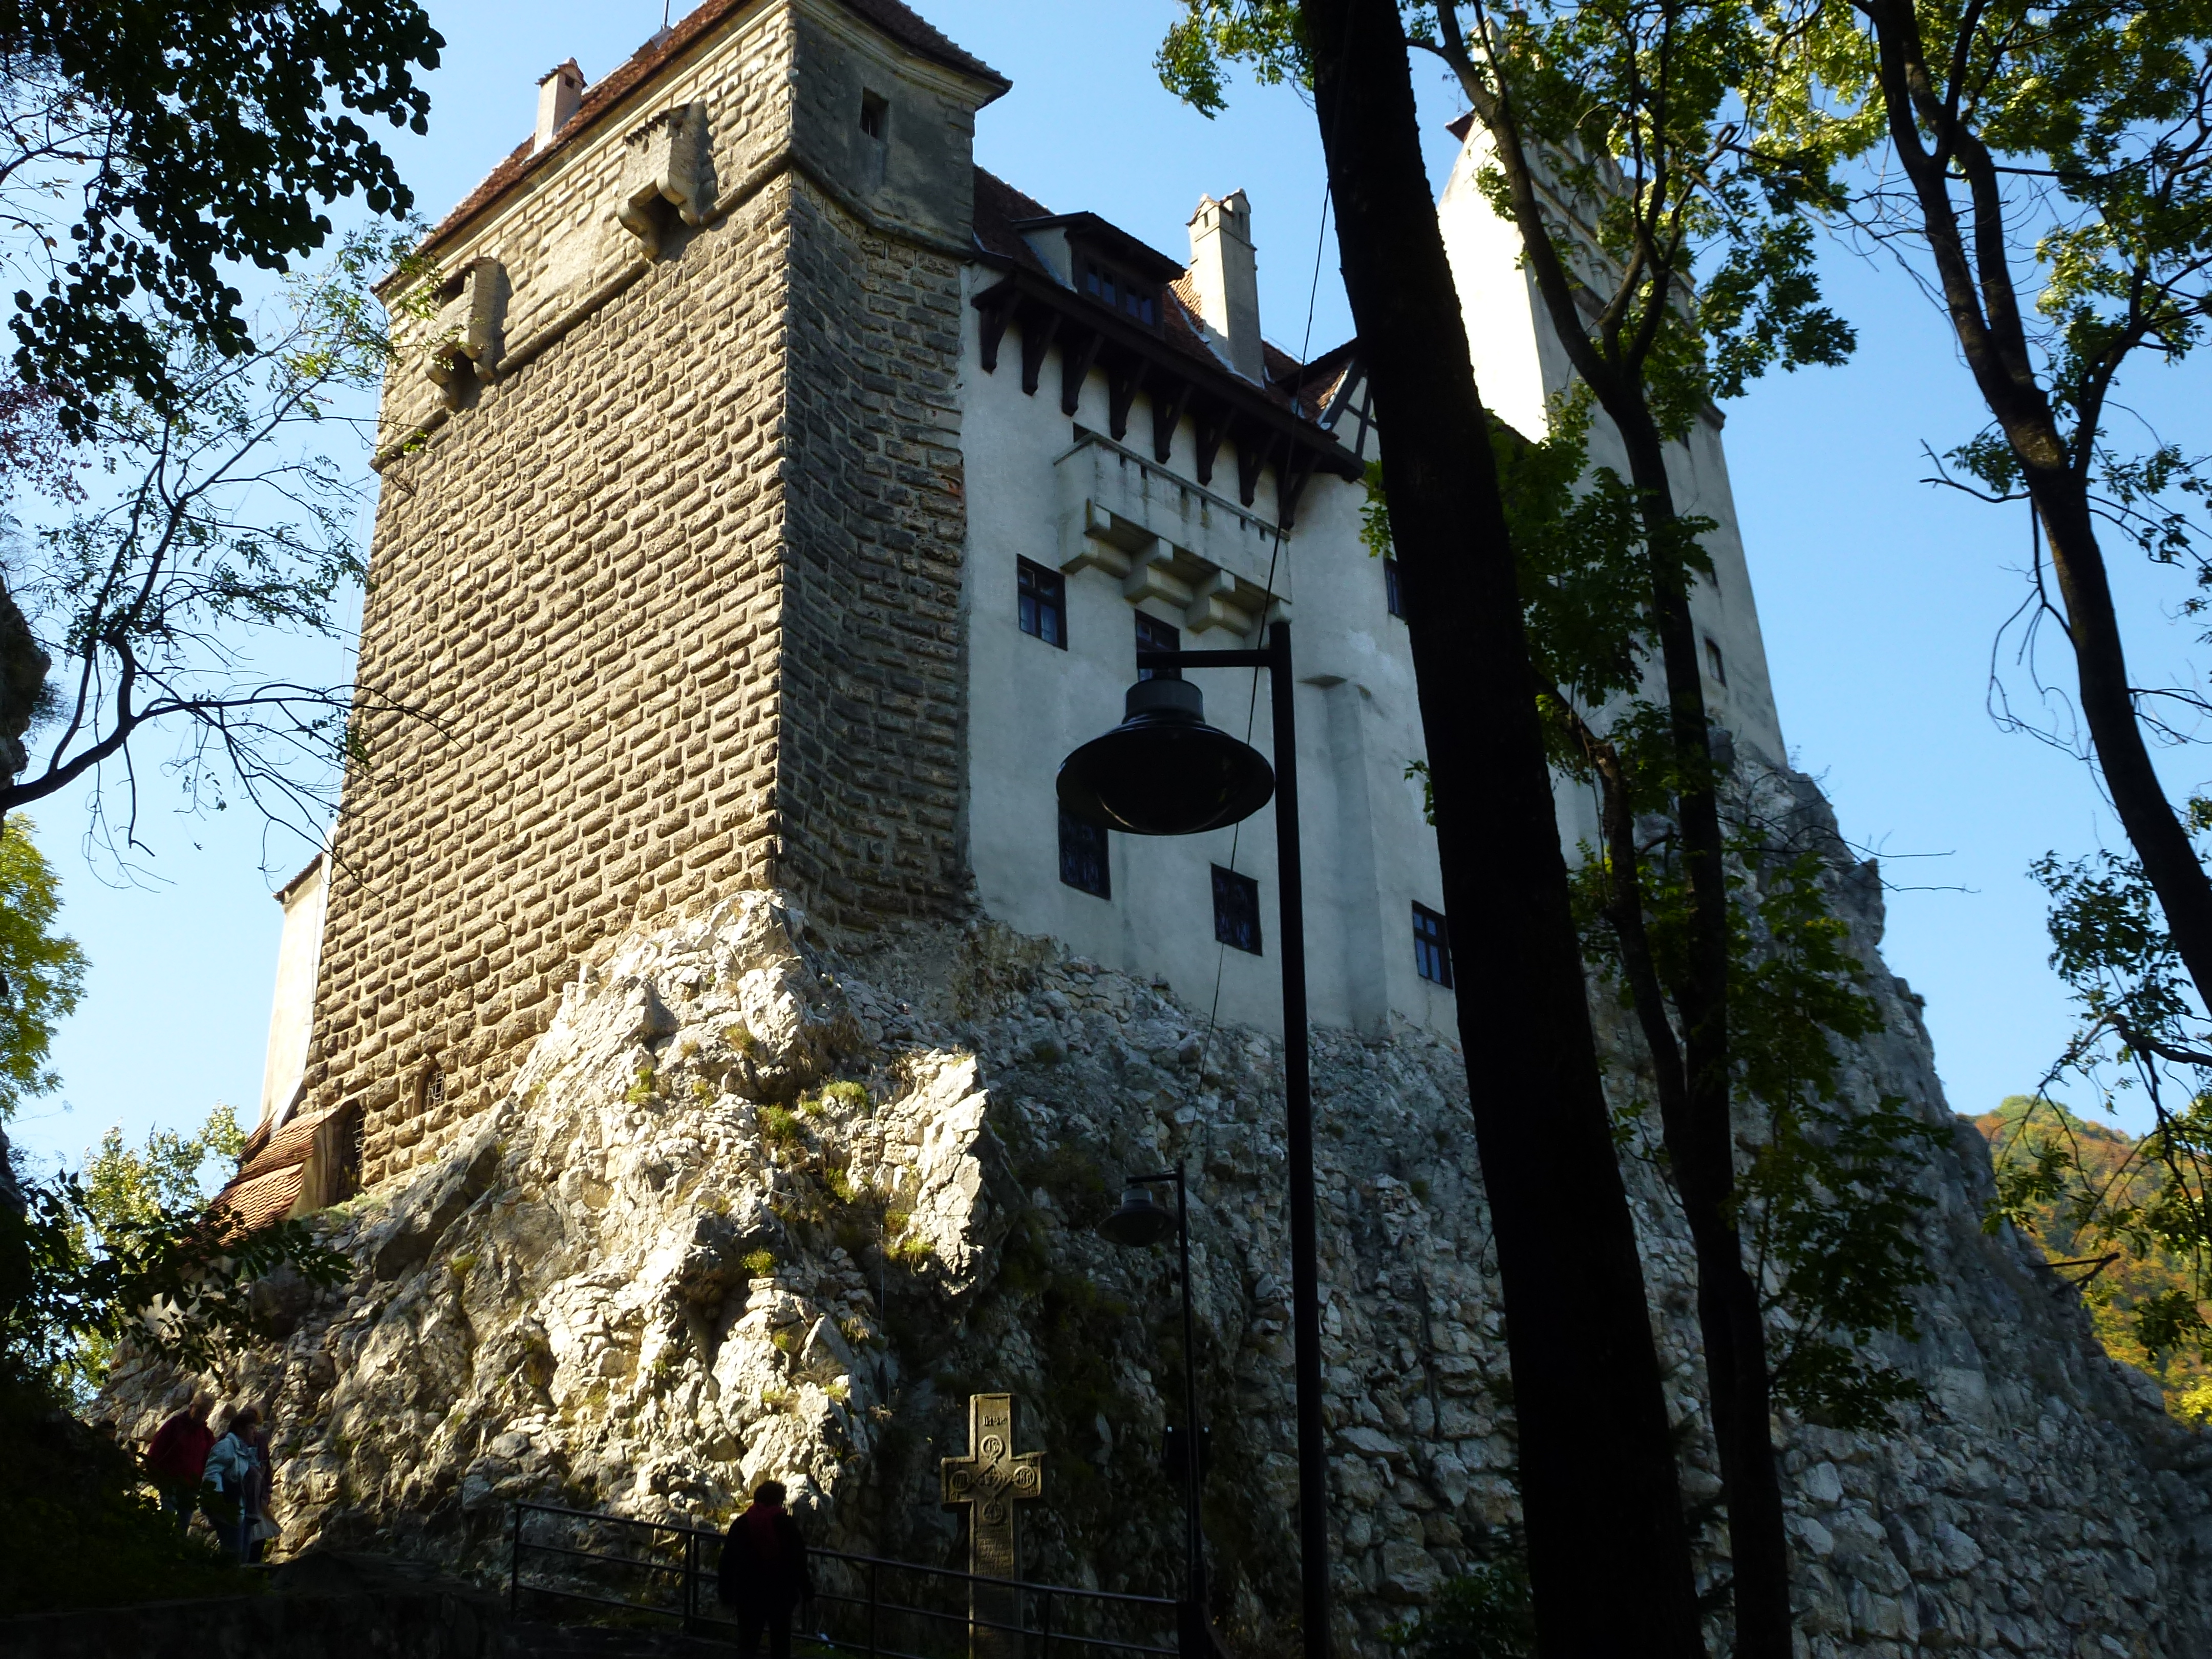 Castelul Dracula exterior - 2014-10-06.jpg